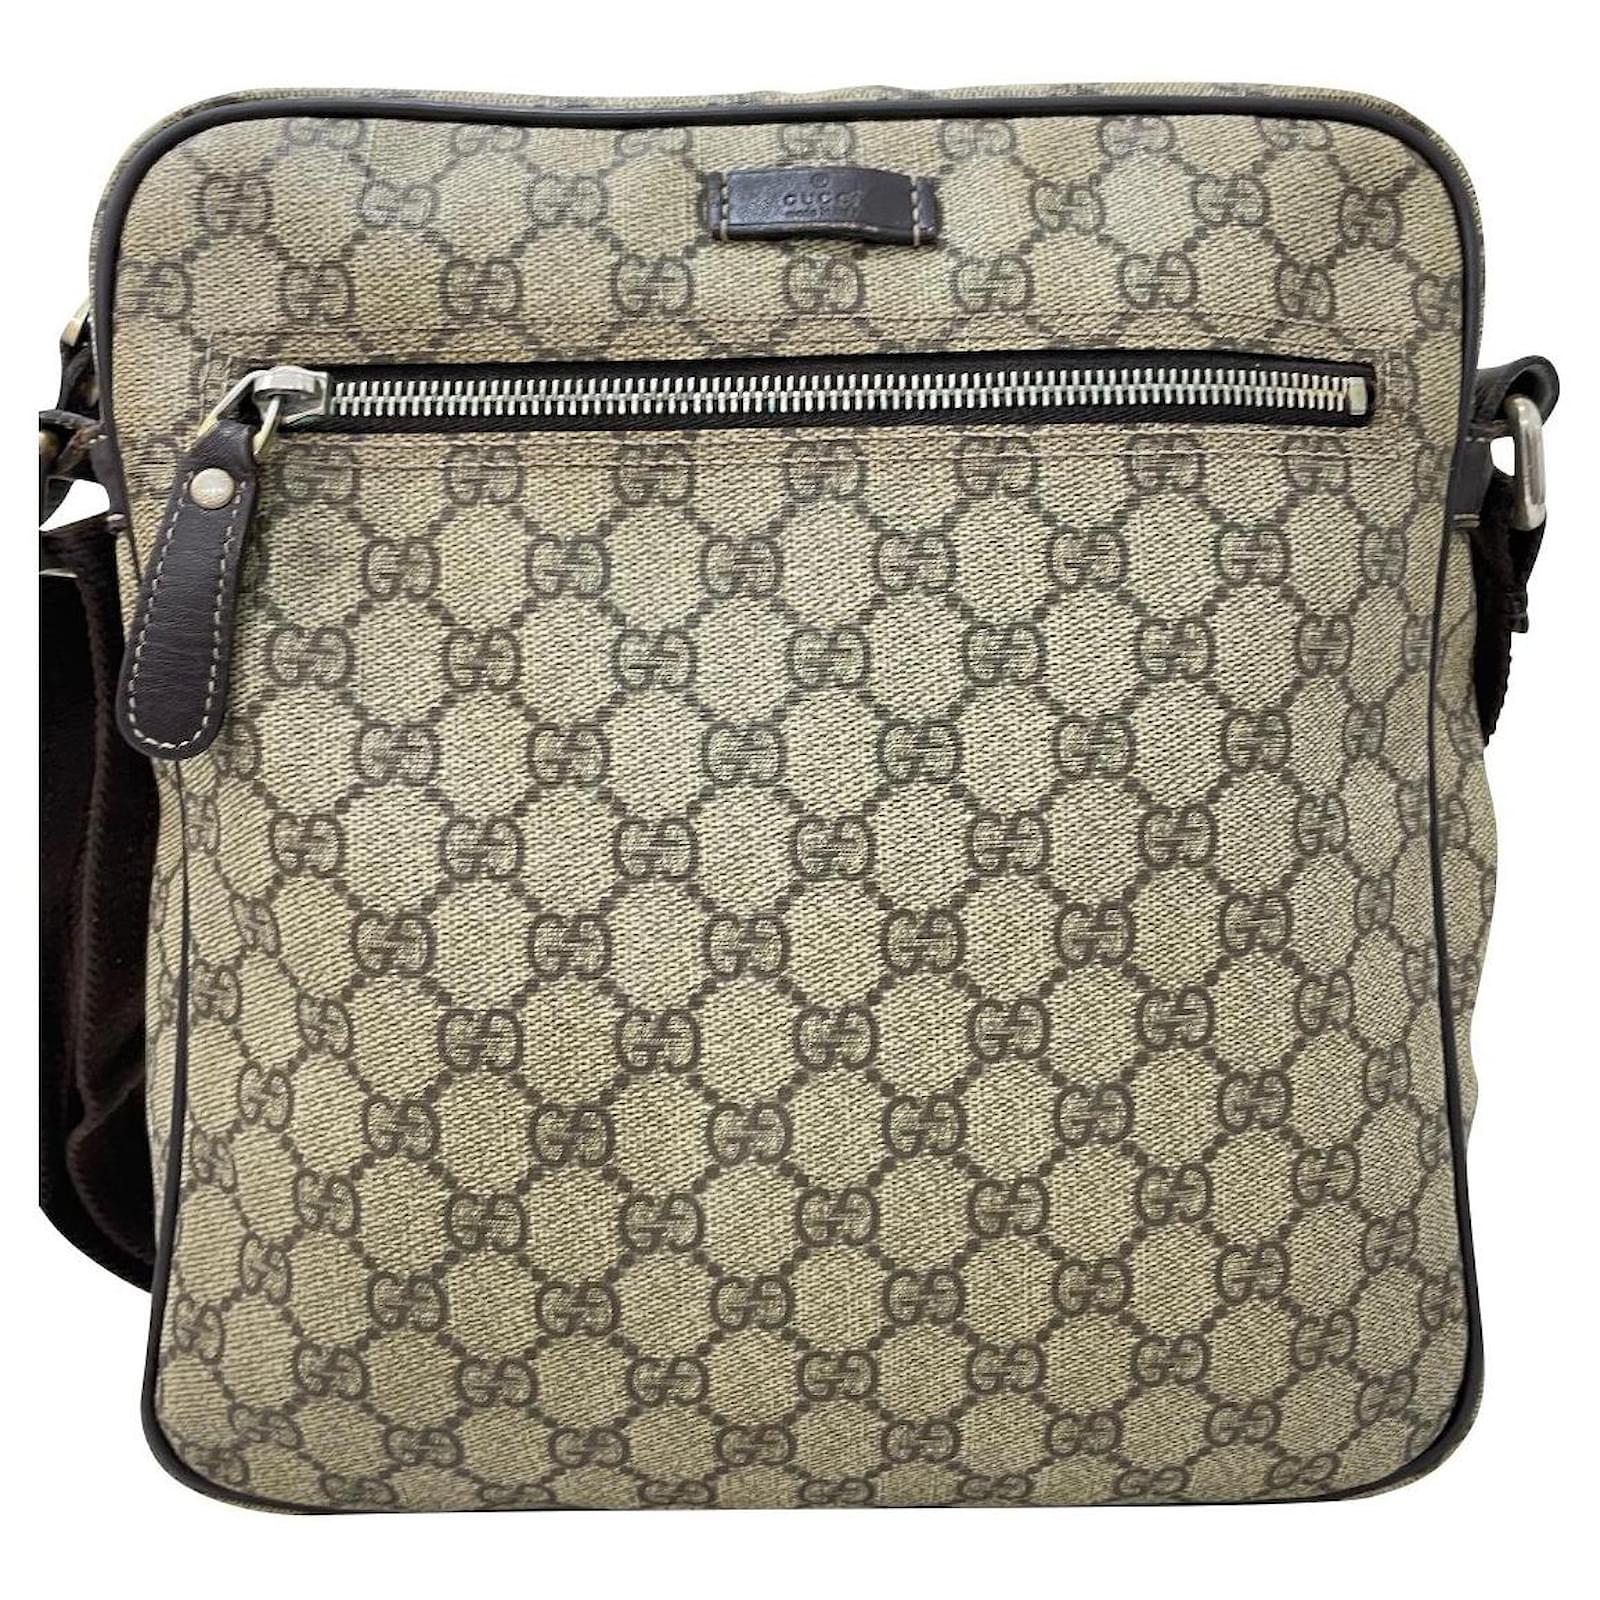 Gucci Bag Mormont Original Khaki Color With Box 806 (J151) - KDB Deals